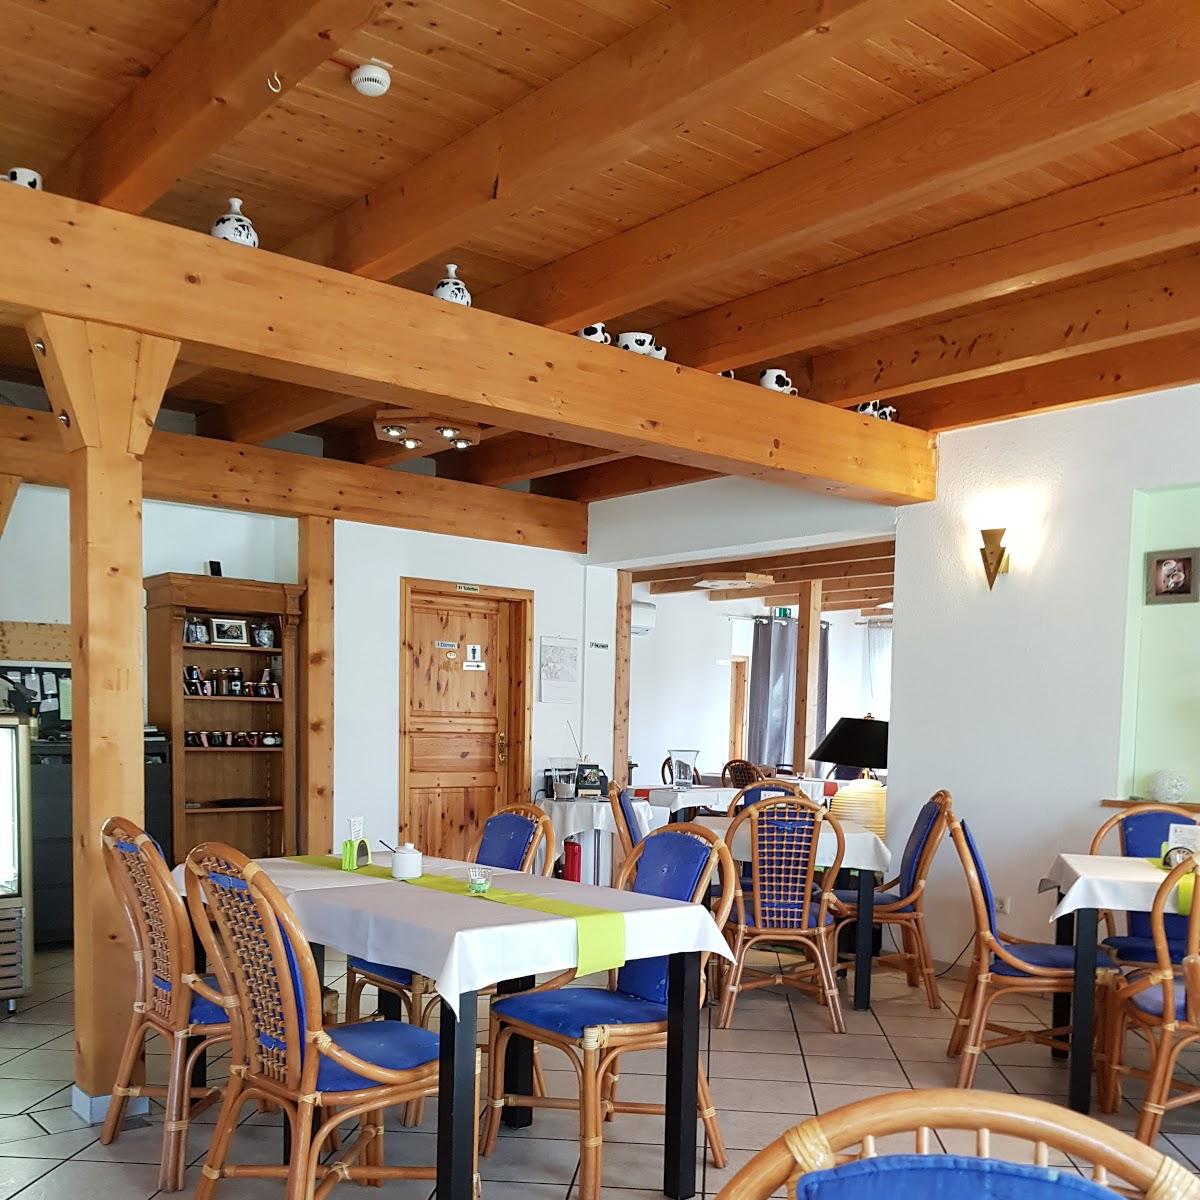 Restaurant "Café am Mühlenteich" in Schwanewede